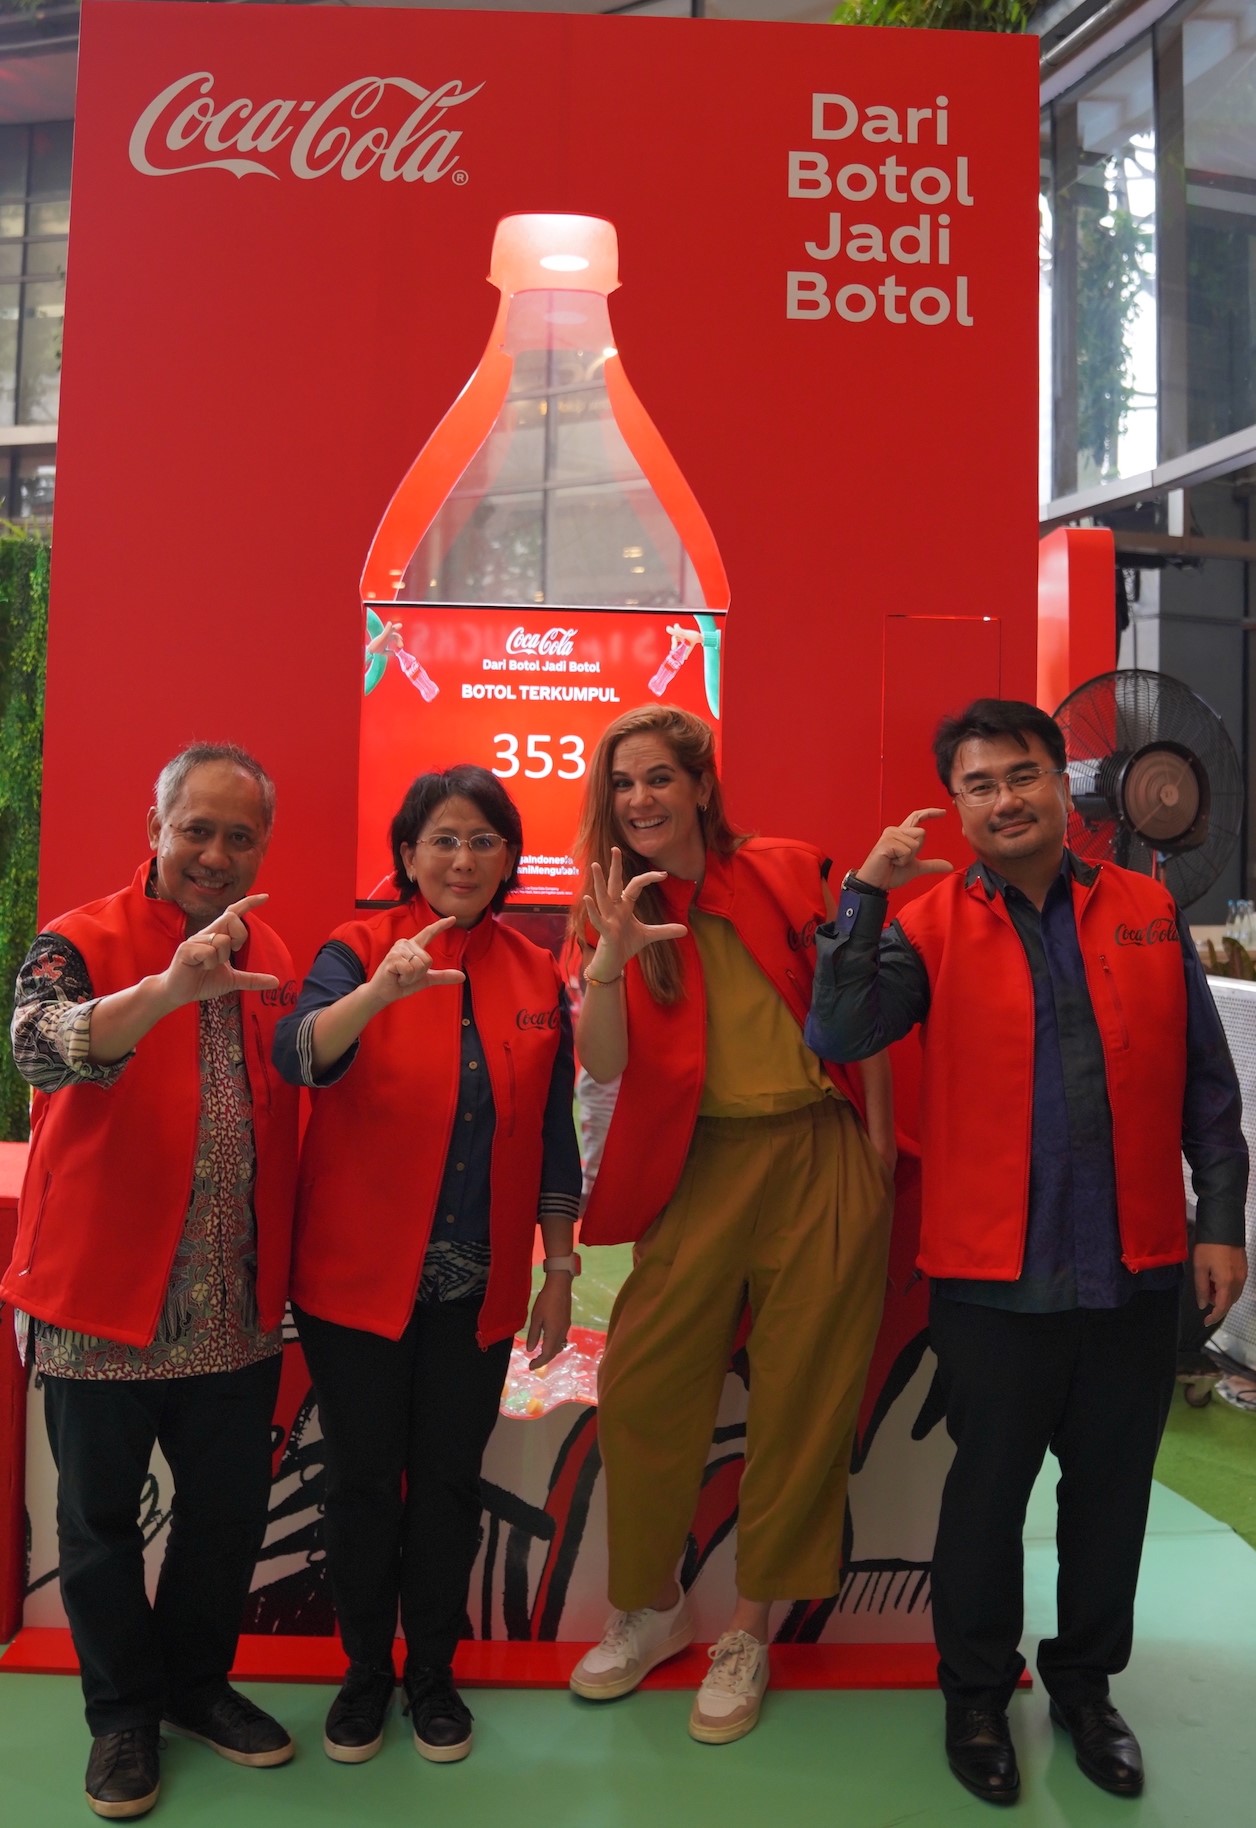 Dukung Ekonomi Sirkular, Coca-Cola Luncurkan Botol 100 Persen rPET di Indonesia, Dari Botol Jadi Botol